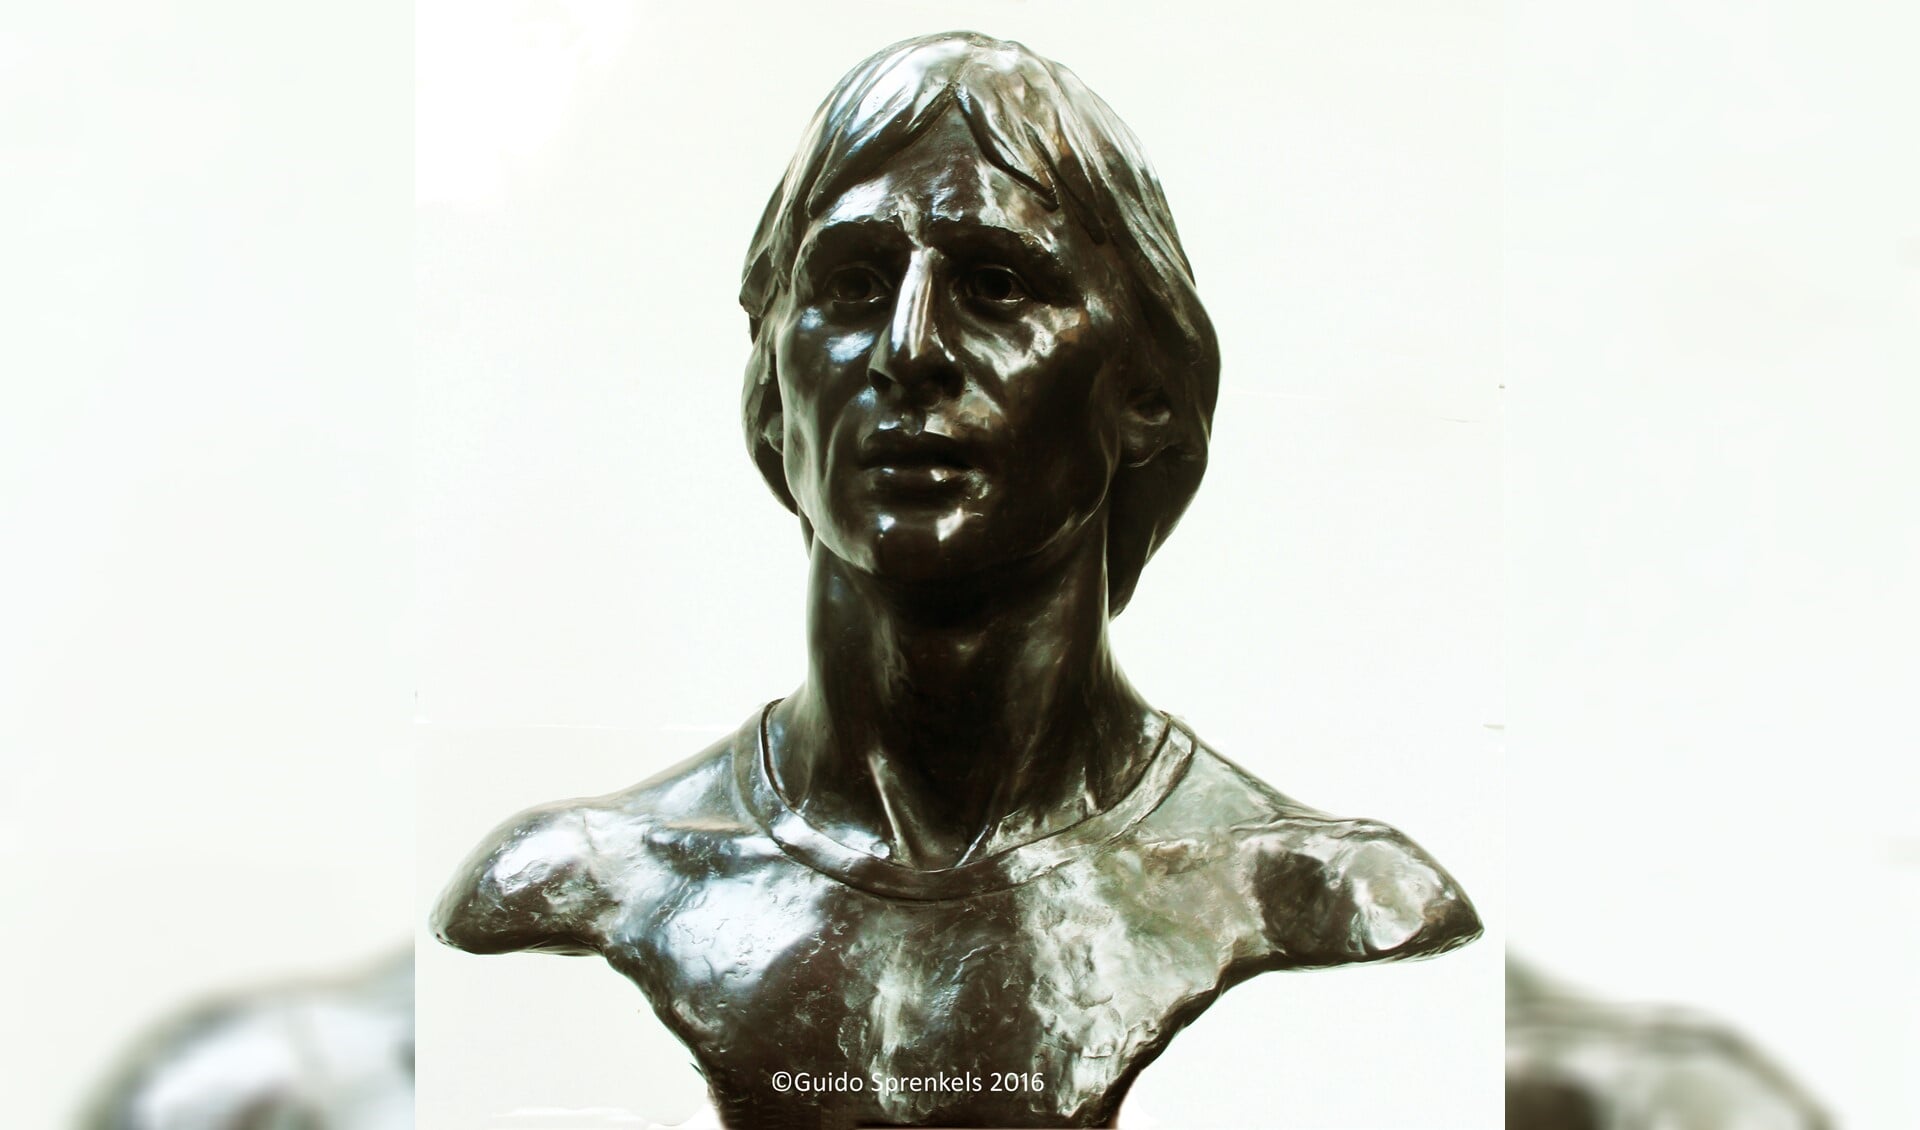 Een gedeelte van het borstbeeld van Johan Cruijff, gemaakt door beeldhouwer Guido Sprenkels.